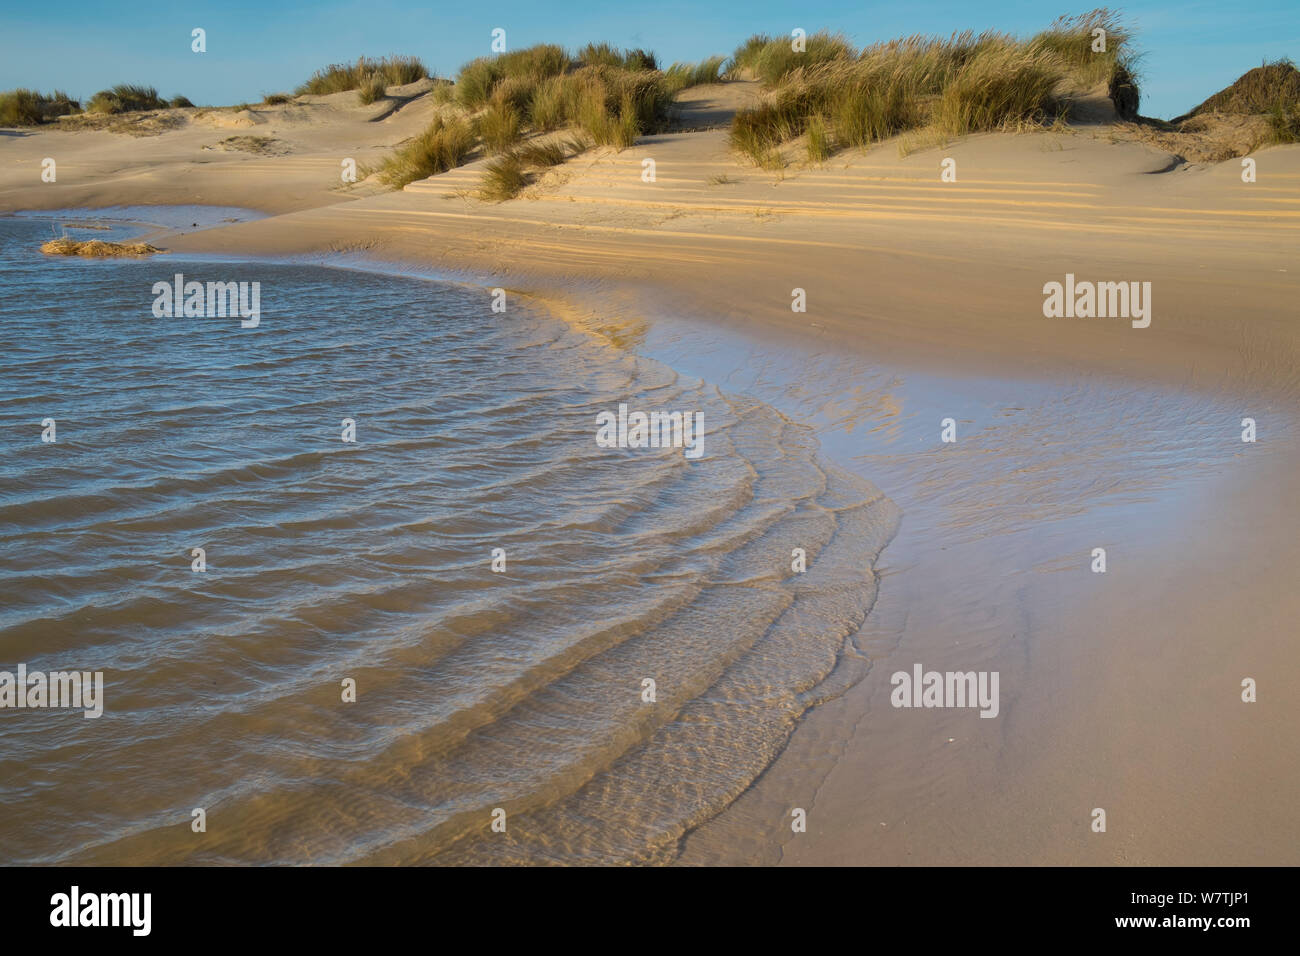 Sanddünen in Marram Gras bedeckt (Ammophila arenaria) vom 6. Dezember Ostküste tidal Surge beschädigt, Muster von den zurückweichenden Wasser verursacht, Holkham Beach, Norfolk, England, UK, Dezember 2013. Stockfoto